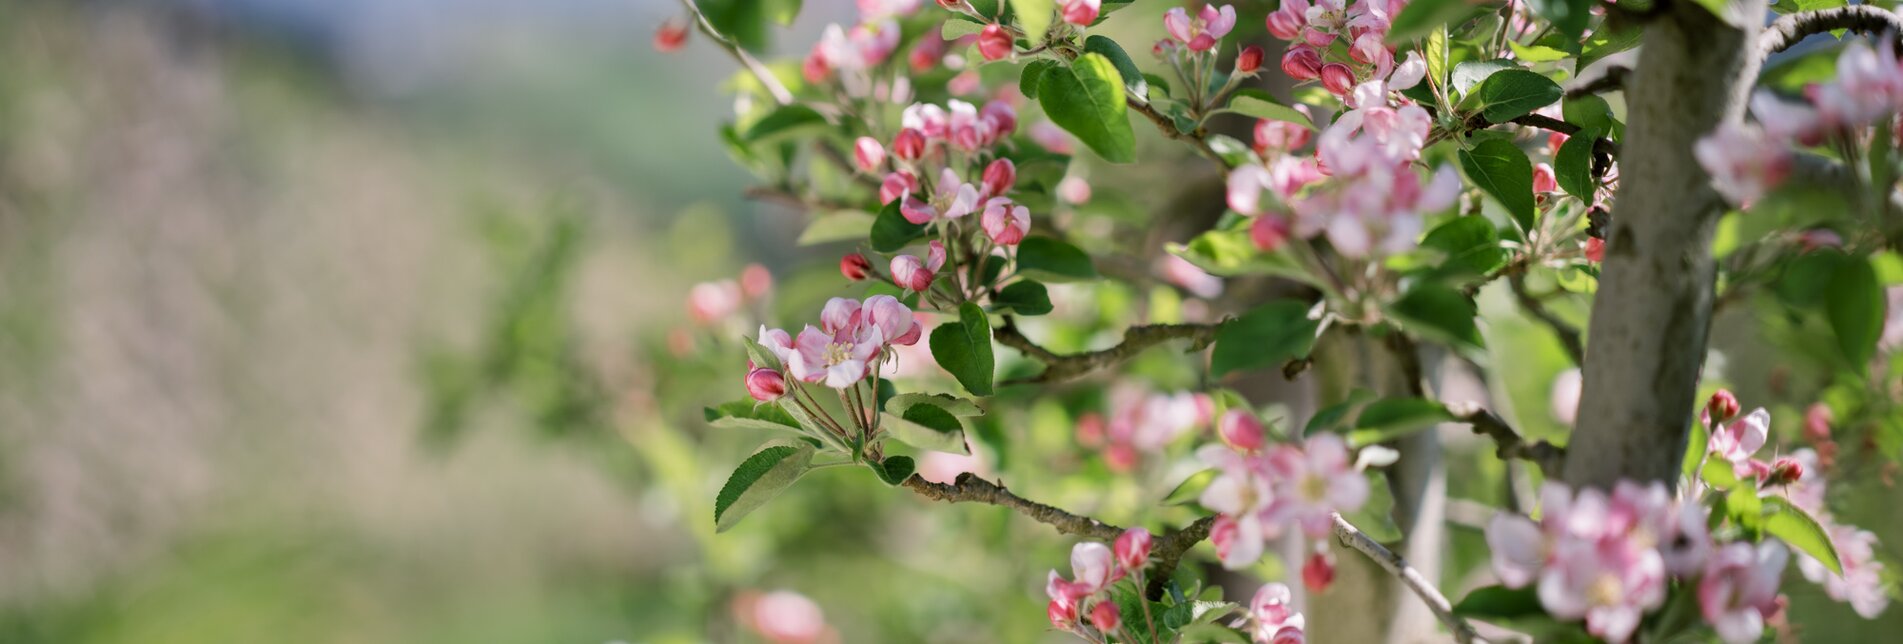 Blühender Apfelbaum im Apfelgarten in der Oststeiermark | © TV Oststeiermark | die mosbachers